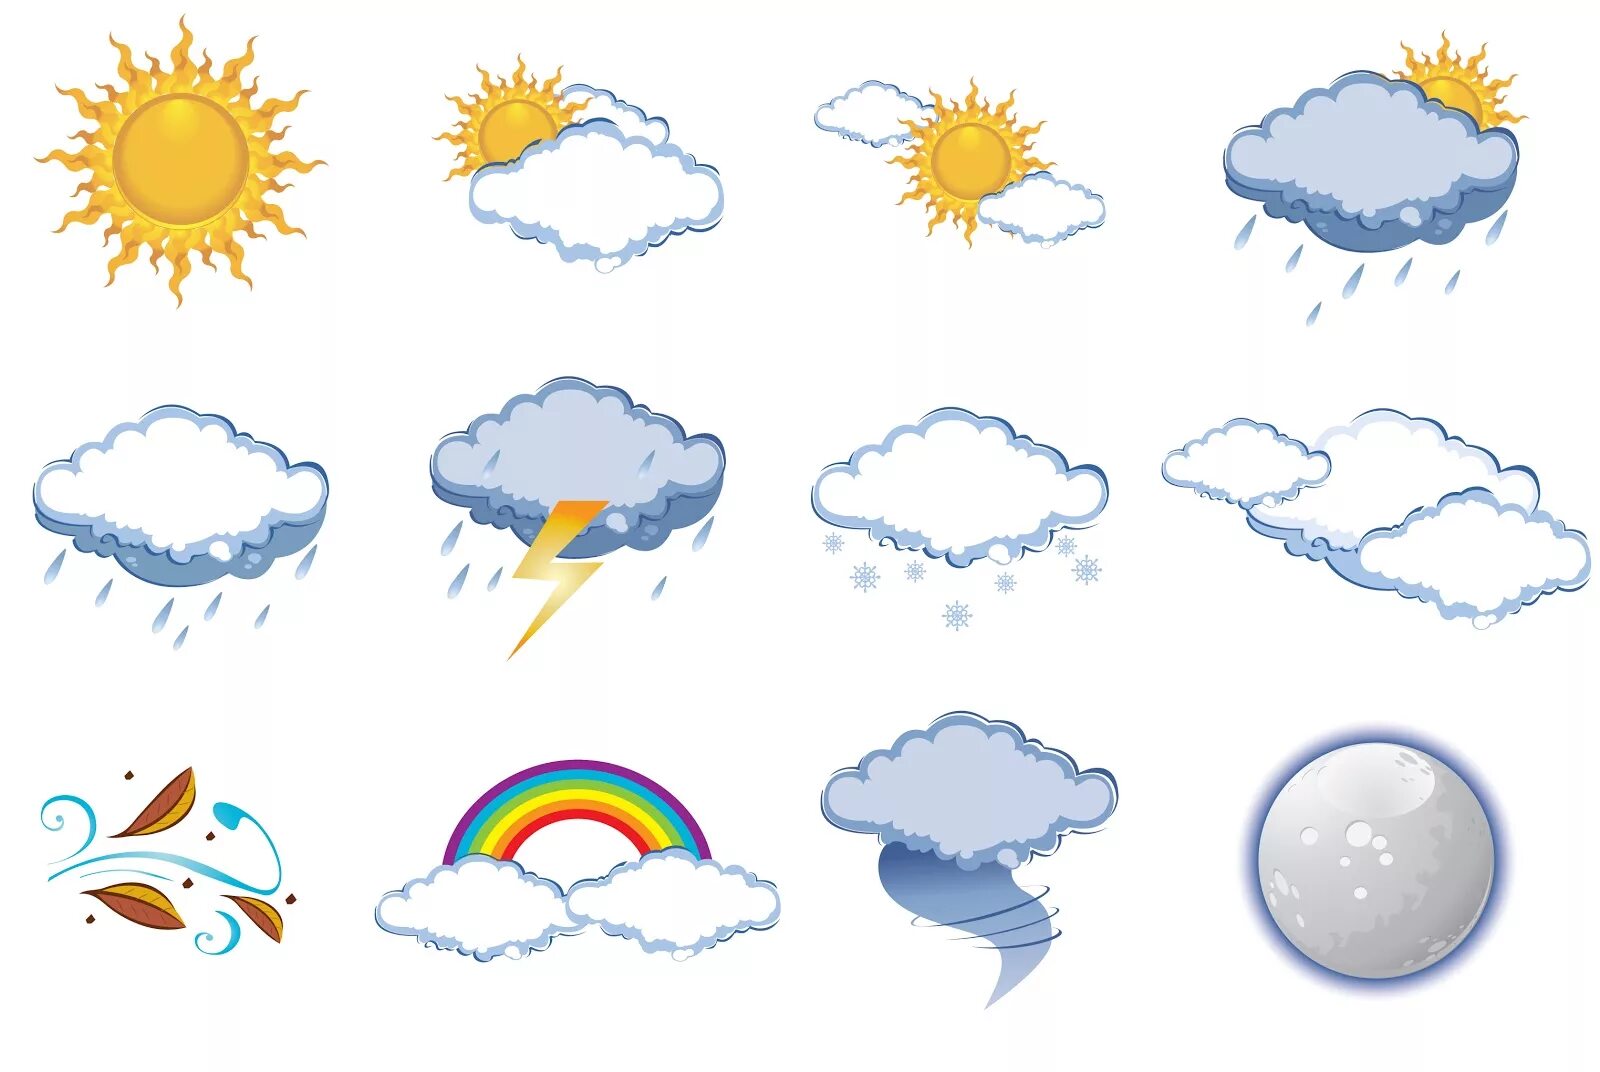 Погода свод. Погодные явления картинки для детей. Погода на английском языке. Gjujlf ZF fzukbqcrjv. Погода картинки на английском для детей.